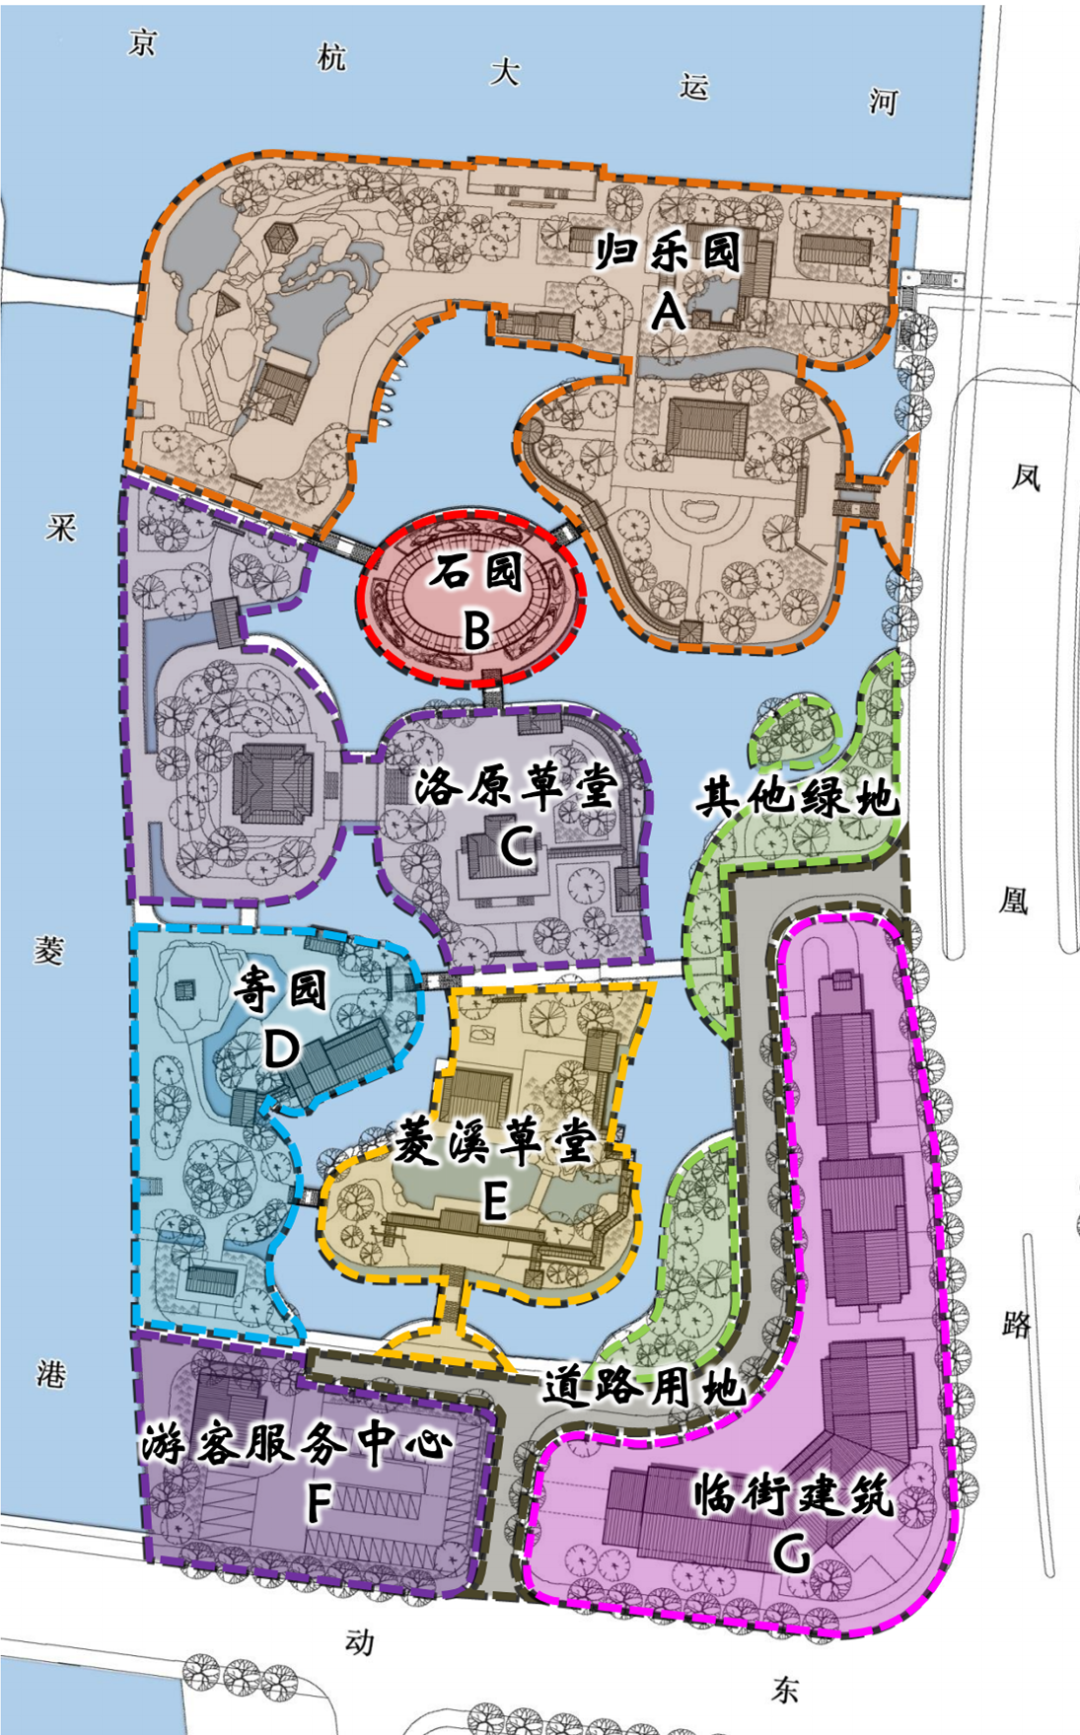 新洲仓埠紫薇花园地图图片